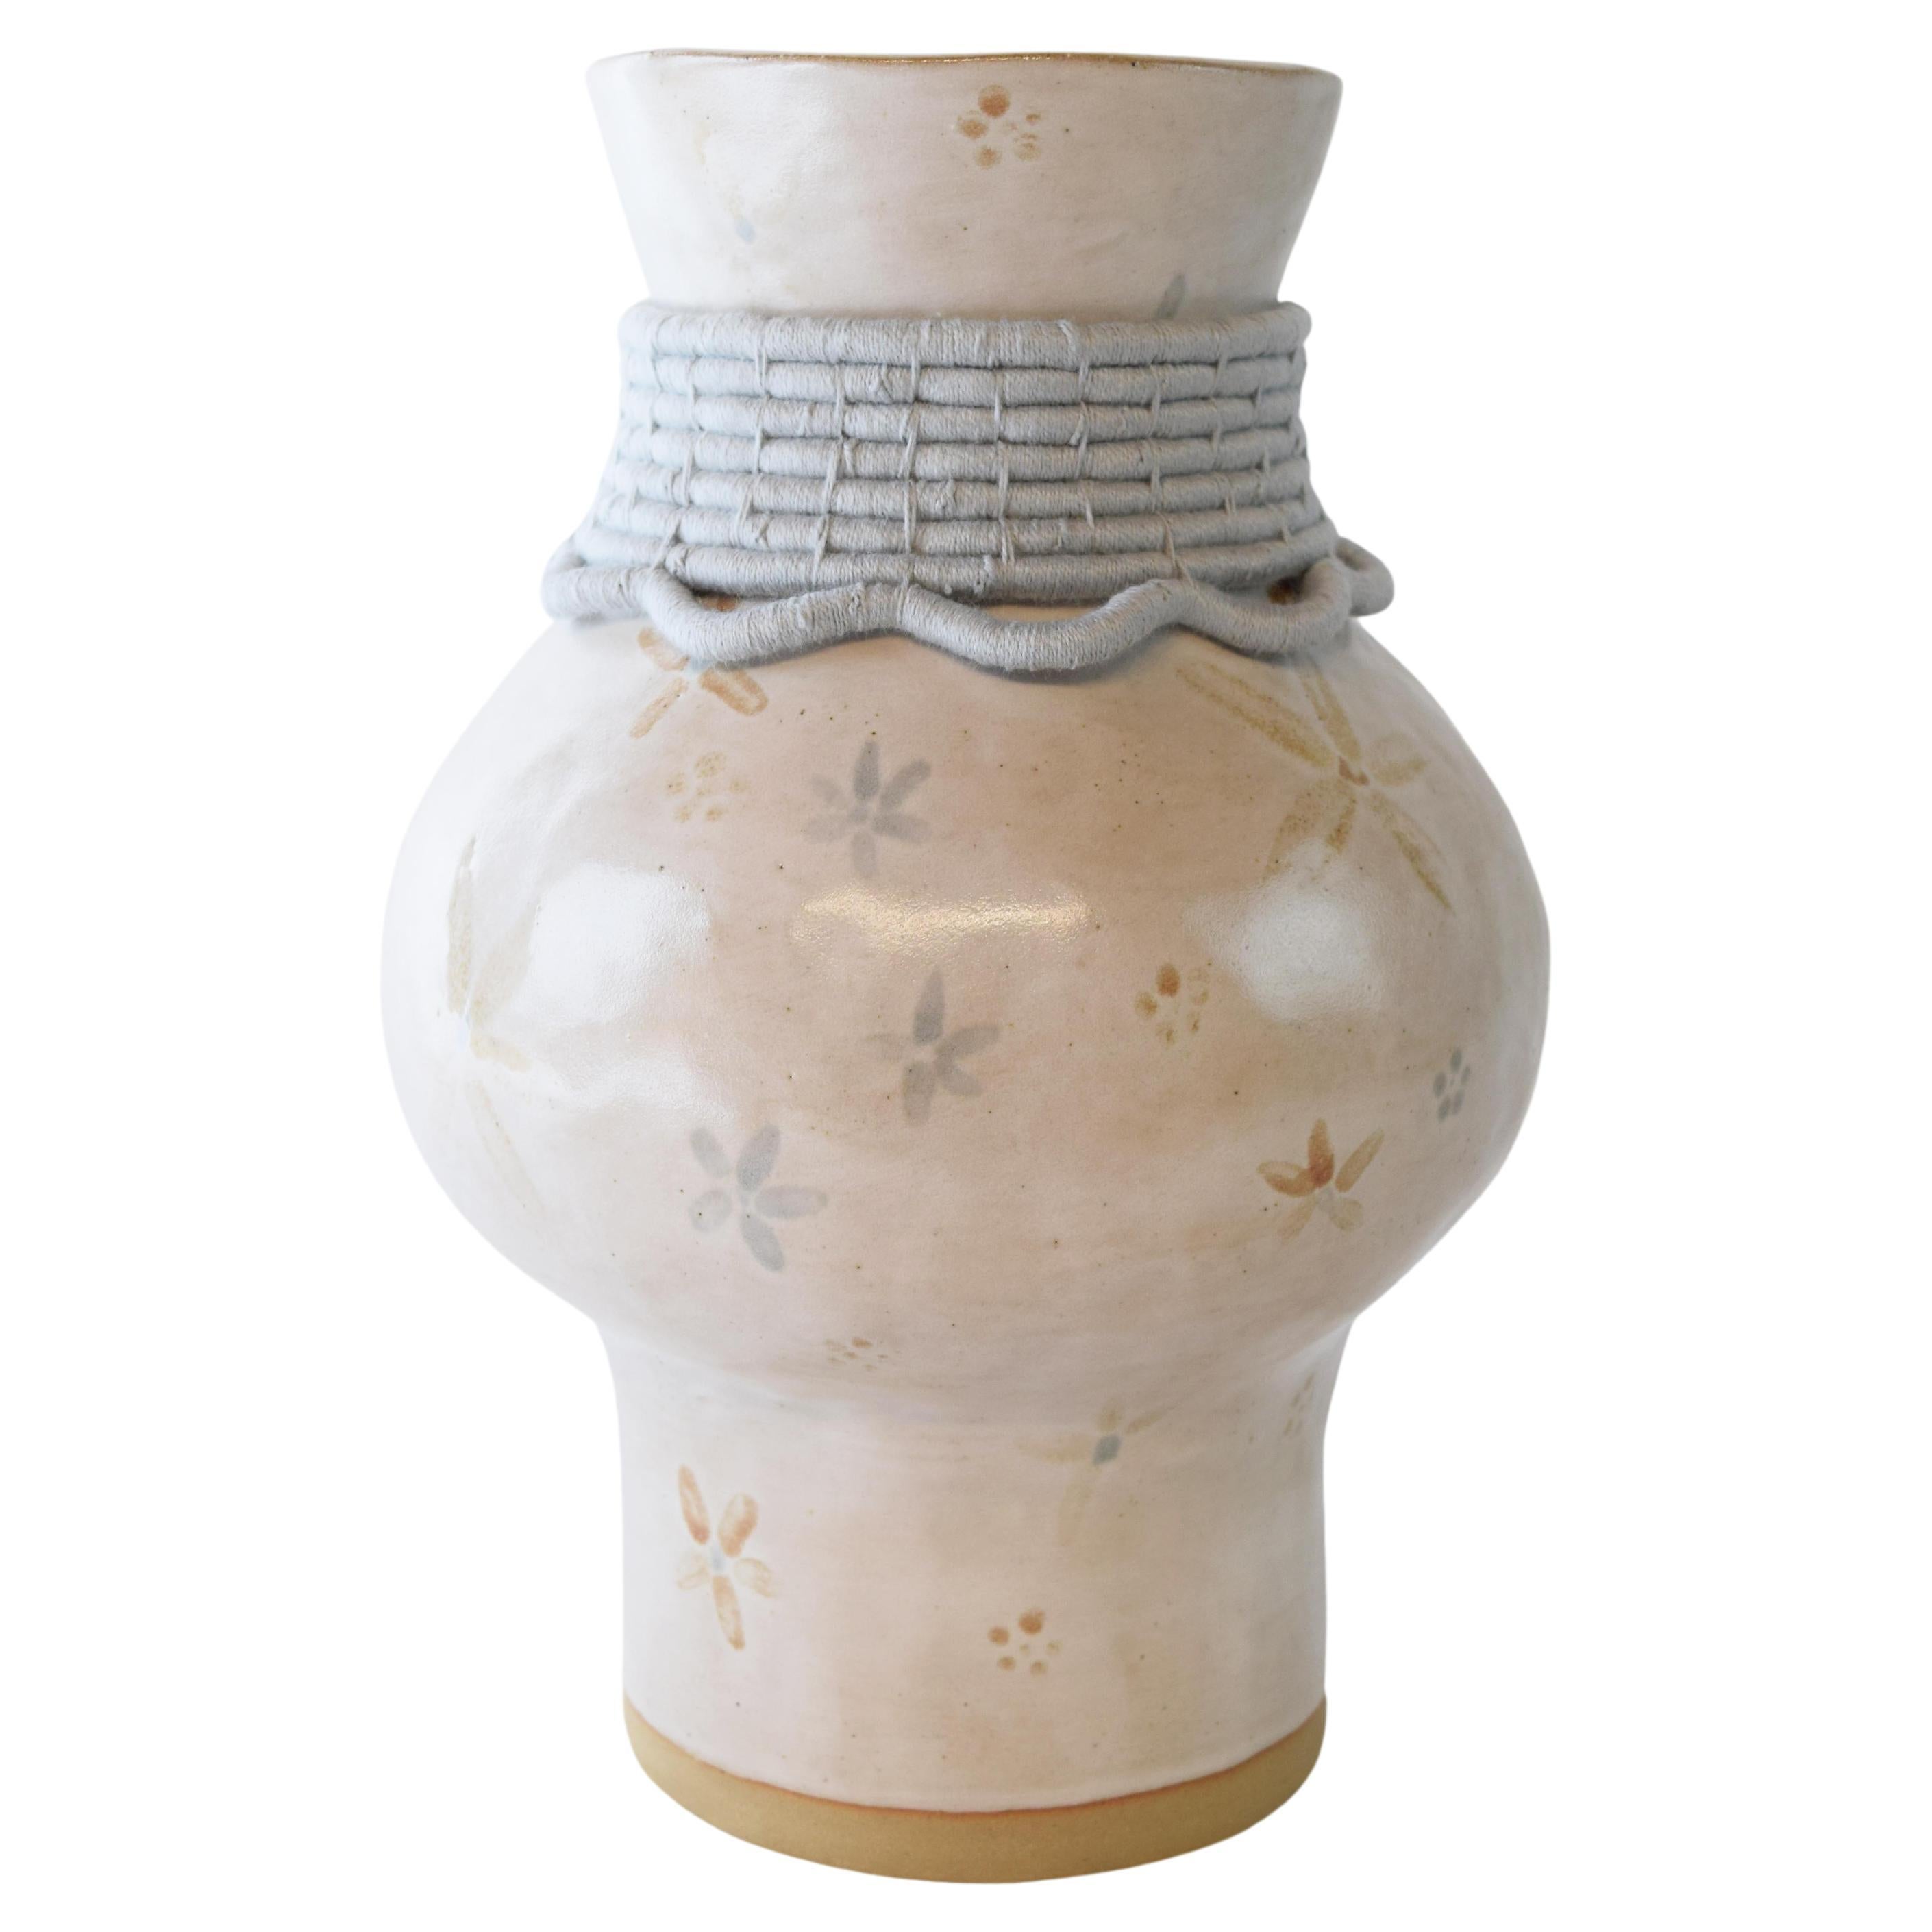 OOAK Handmade Ceramic Vase #791 - Hand Glazed Floral & Light Blue Cotton Detail For Sale